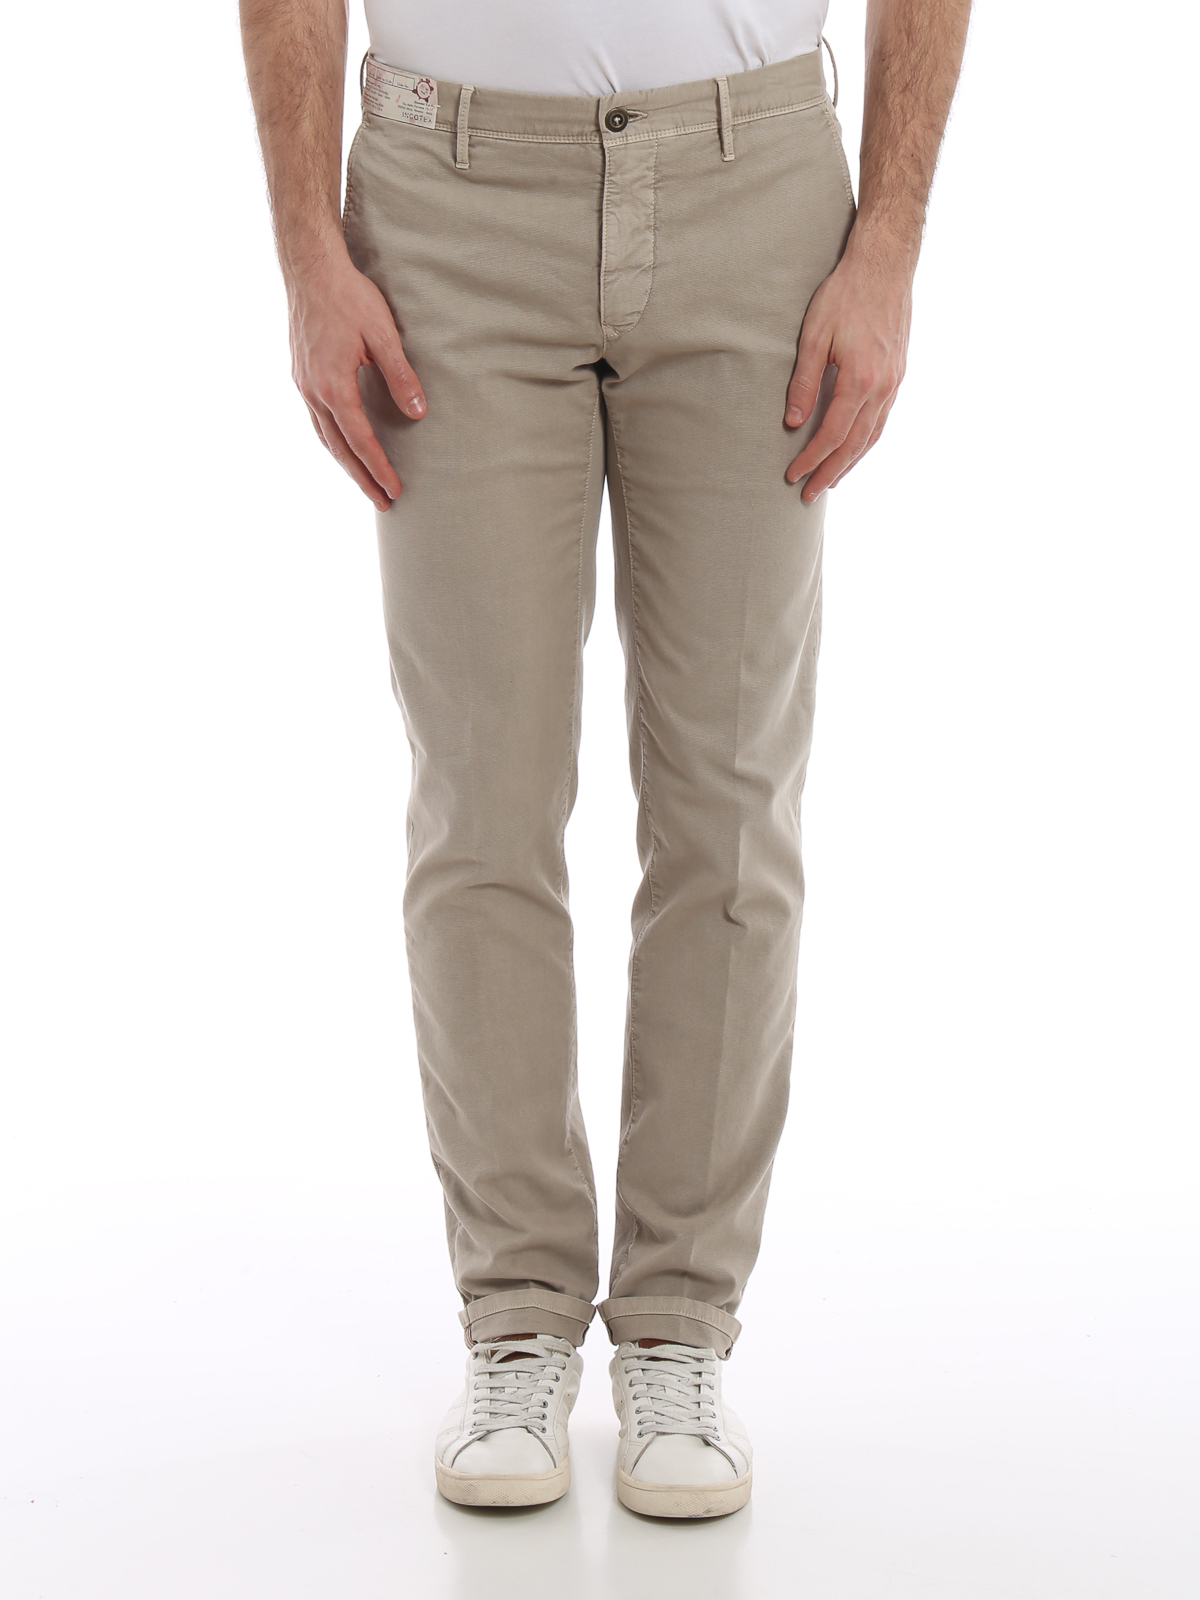 Casual trousers Incotex - Slacks beige cotton slim pants - 10S10090695425